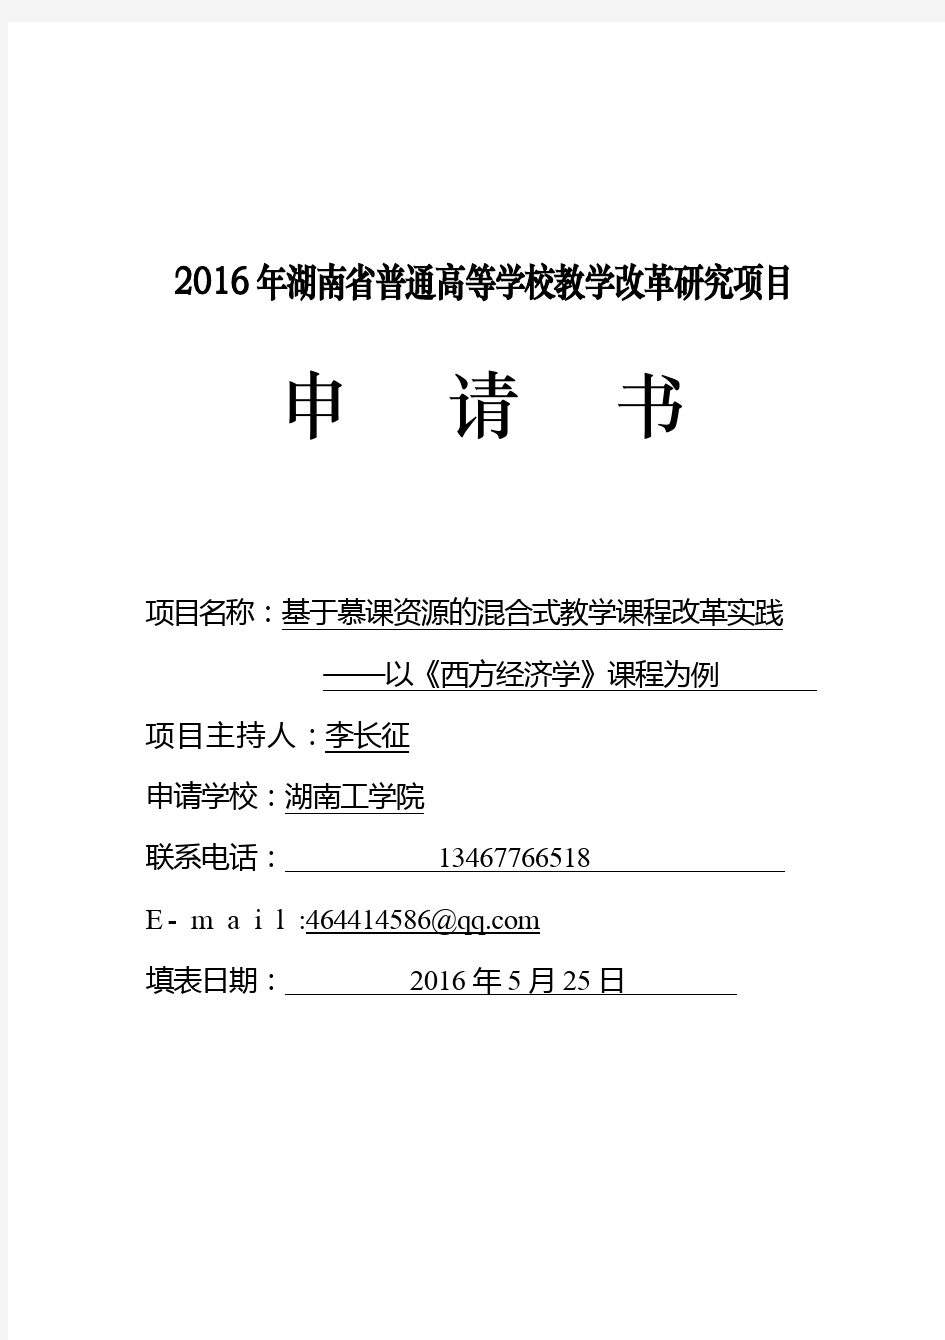 2016年湖南省普通高等学校教学改革研究项目